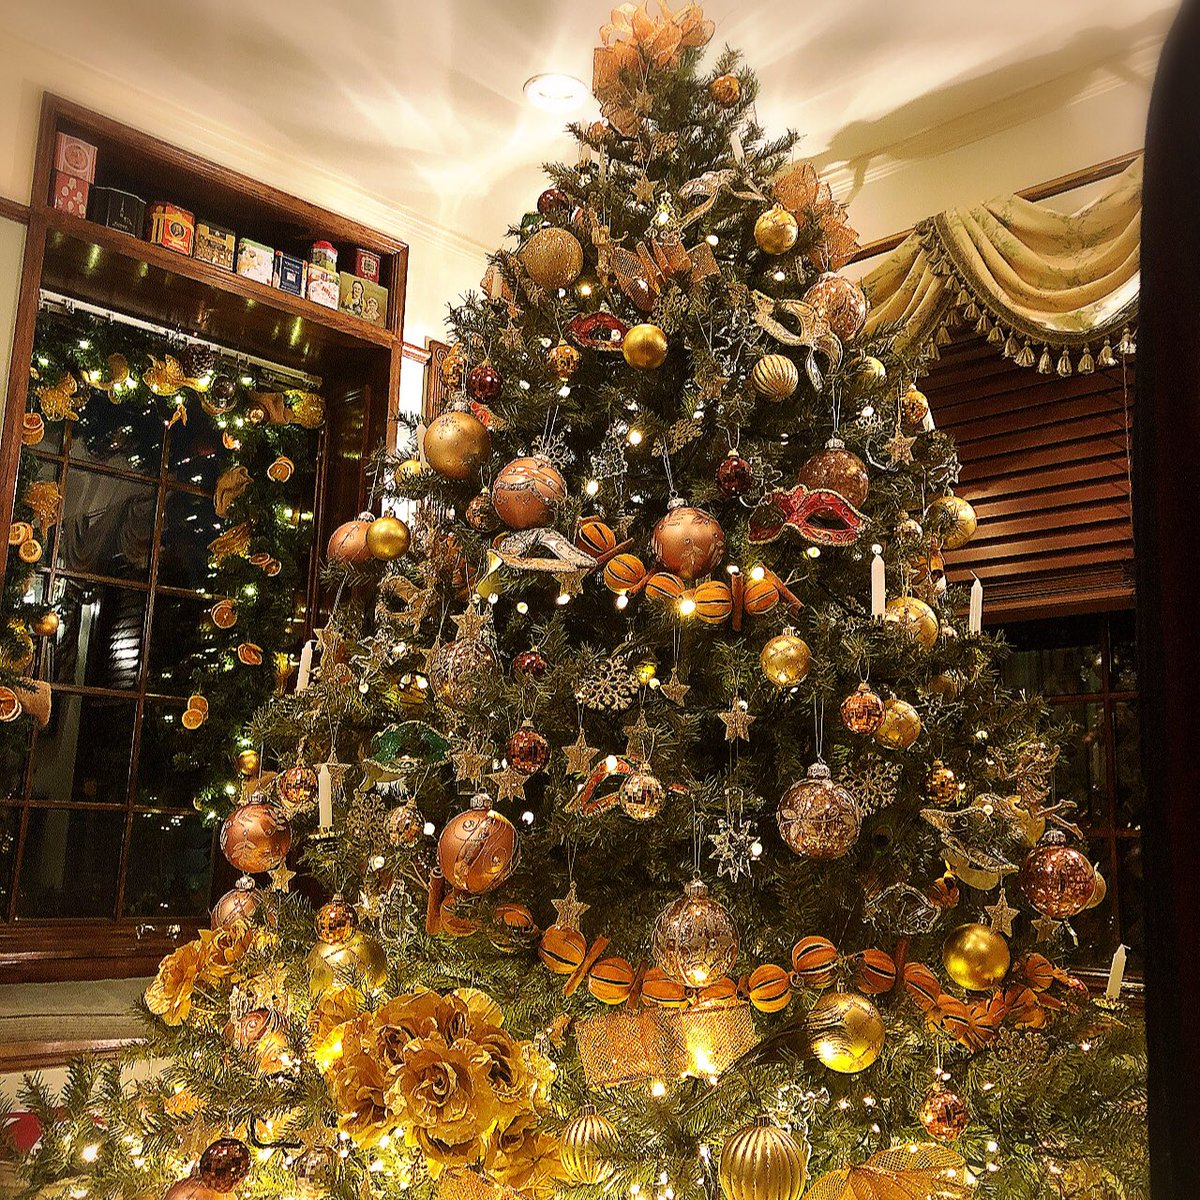 りゆたま No Twitter サロンに大きなクリスマスツリー が登場 仮面舞踏会がテーマのツリーなのですよ 紅茶教室 Chatea 仮面舞踏会 クリスマスツリー